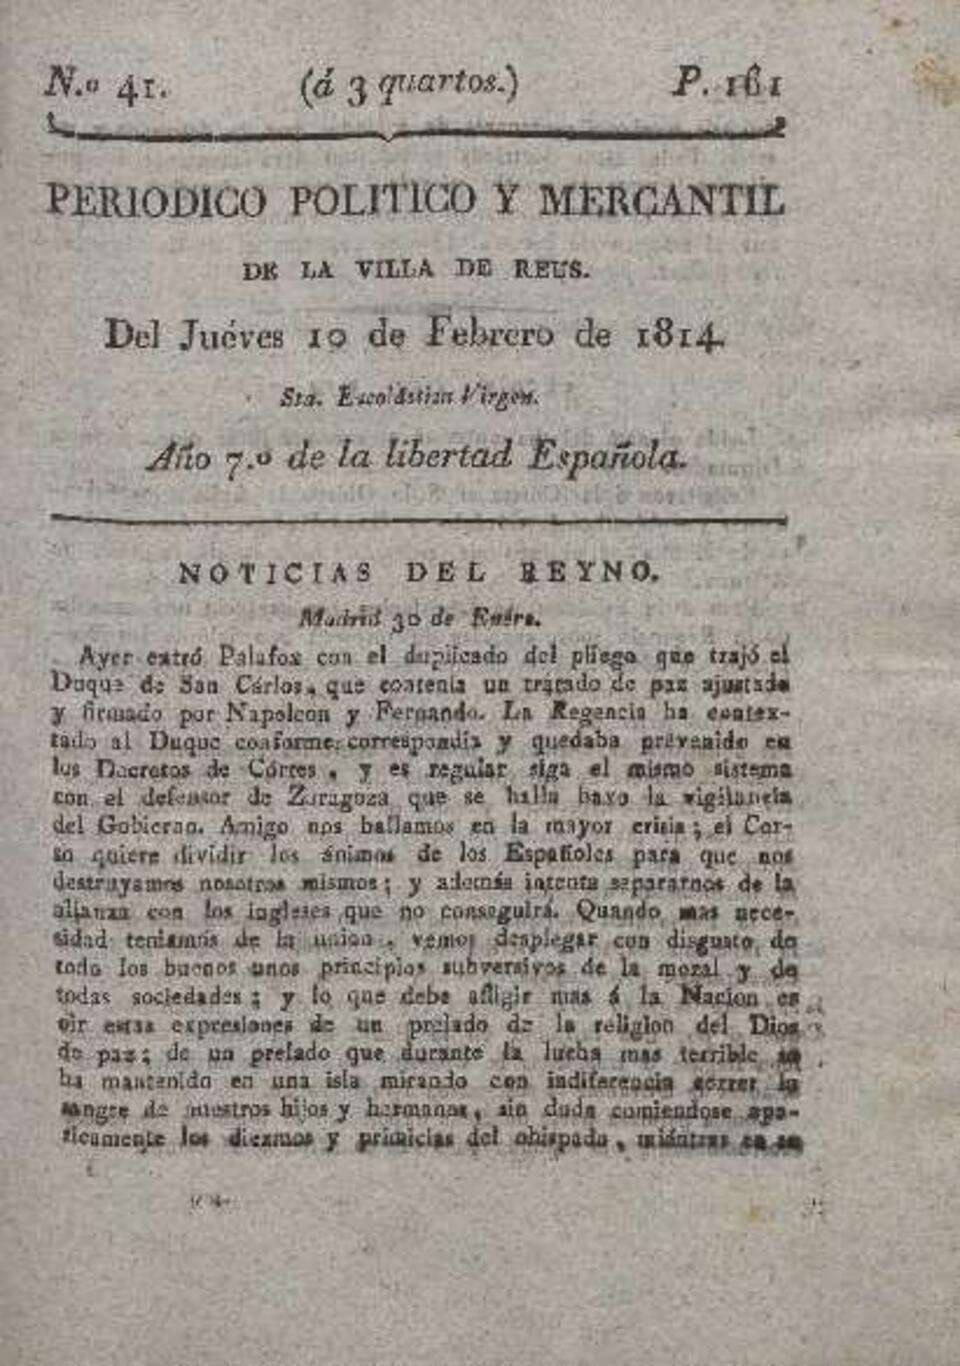 Periódico Político y Mercantil, #41, 10/2/1814 [Issue]